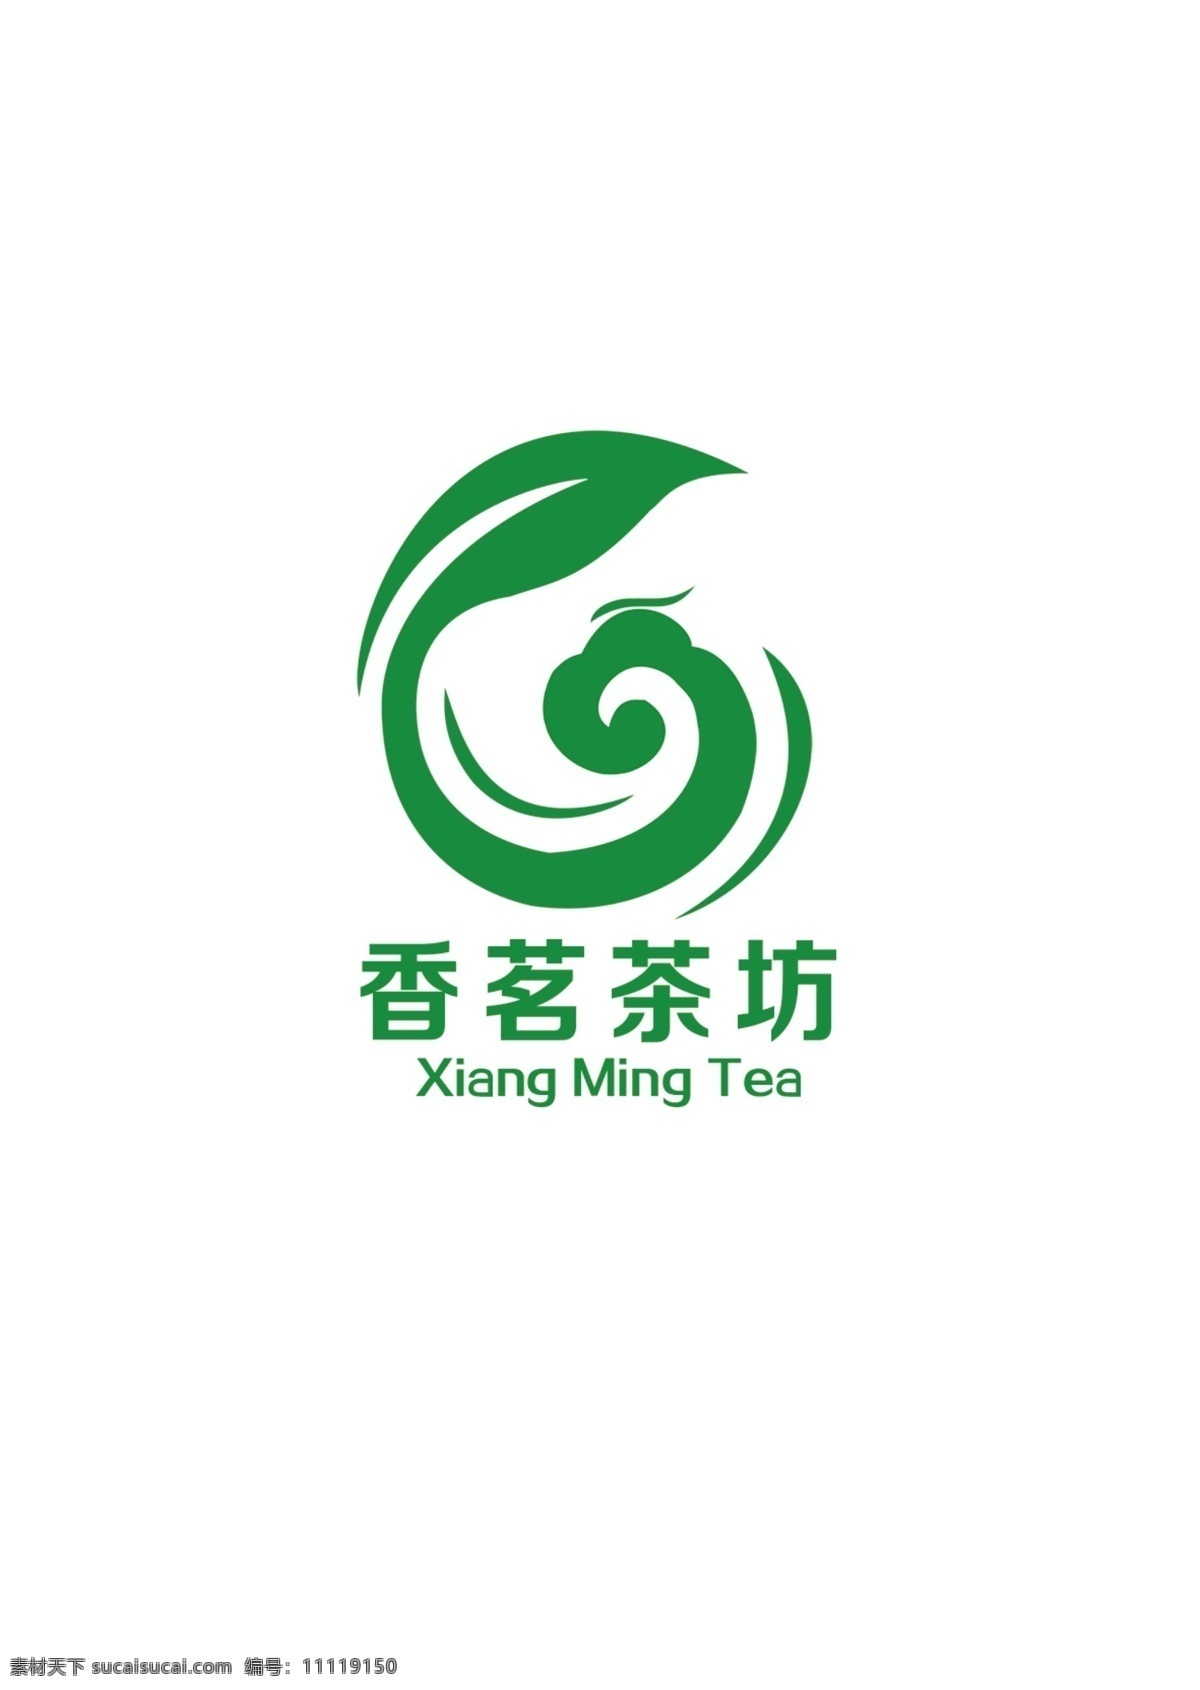 茶叶logo 帽子 茶文化 茶 叶子 茶杯 logo